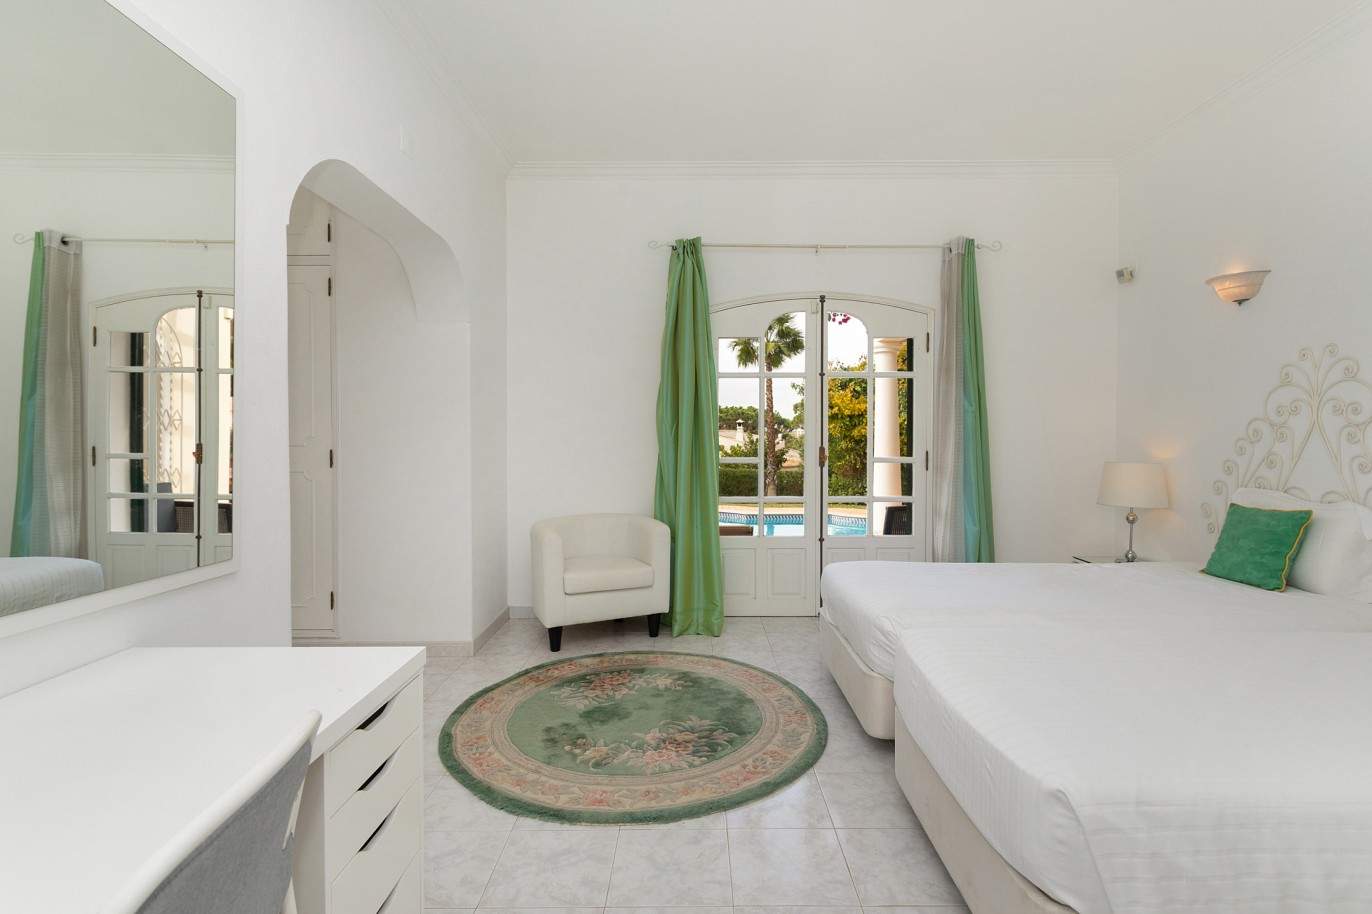 5 Bedroom Villa with swimming pool, for sale in Vilamoura, Algarve_212552